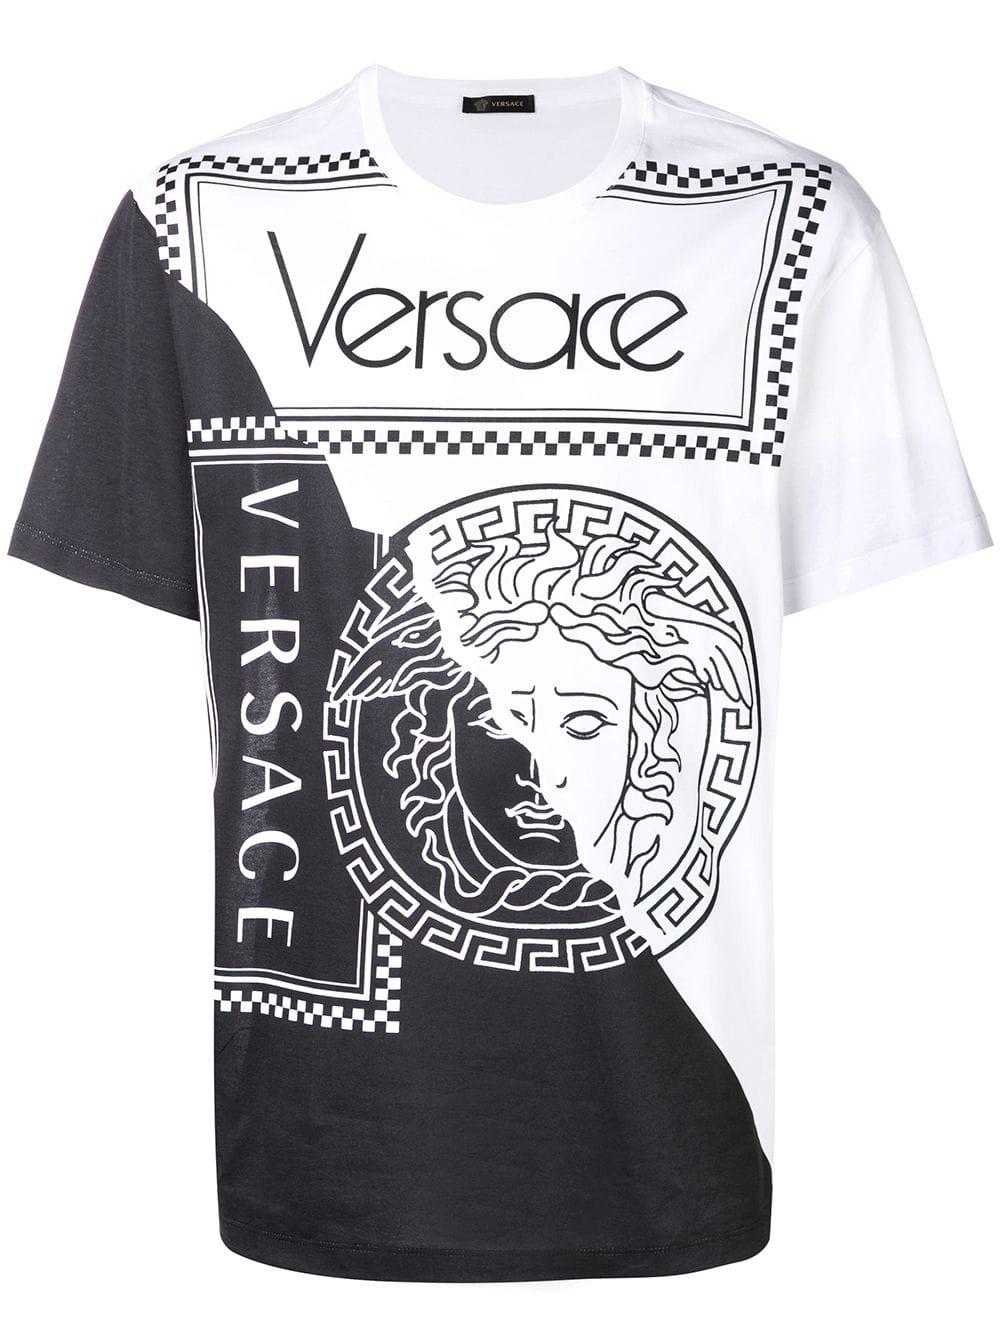 versace tshirt white